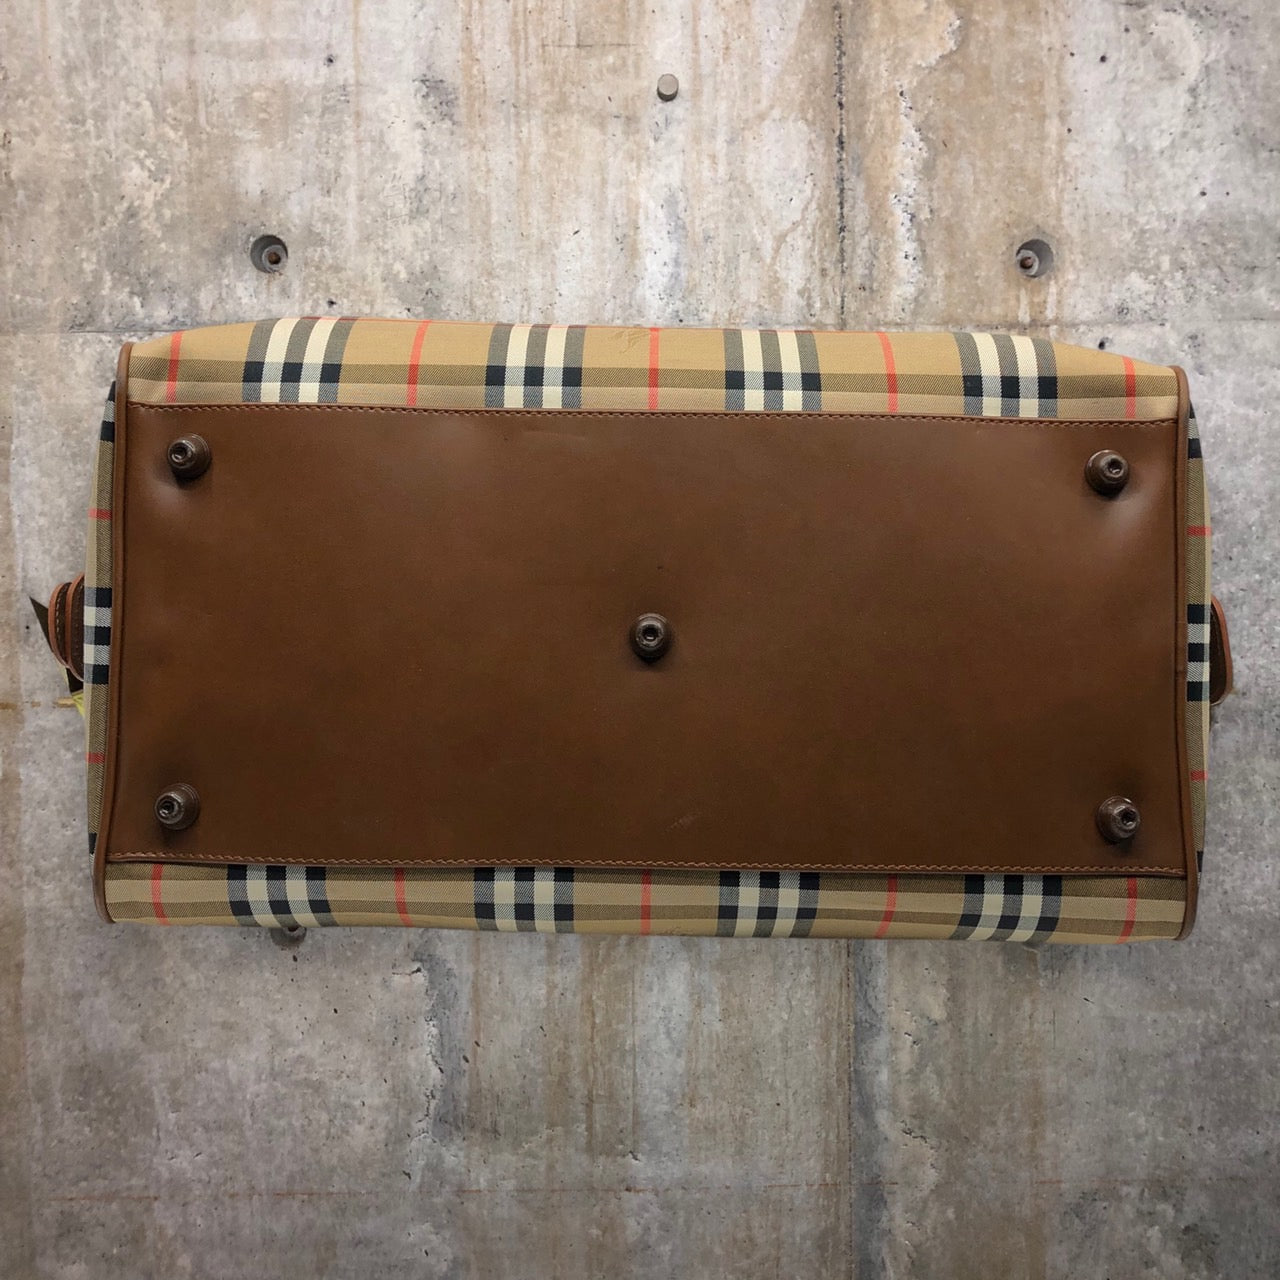 BURBERRY(バーバリー) ロゴノヴァチェックボストンバッグ/旅行鞄 